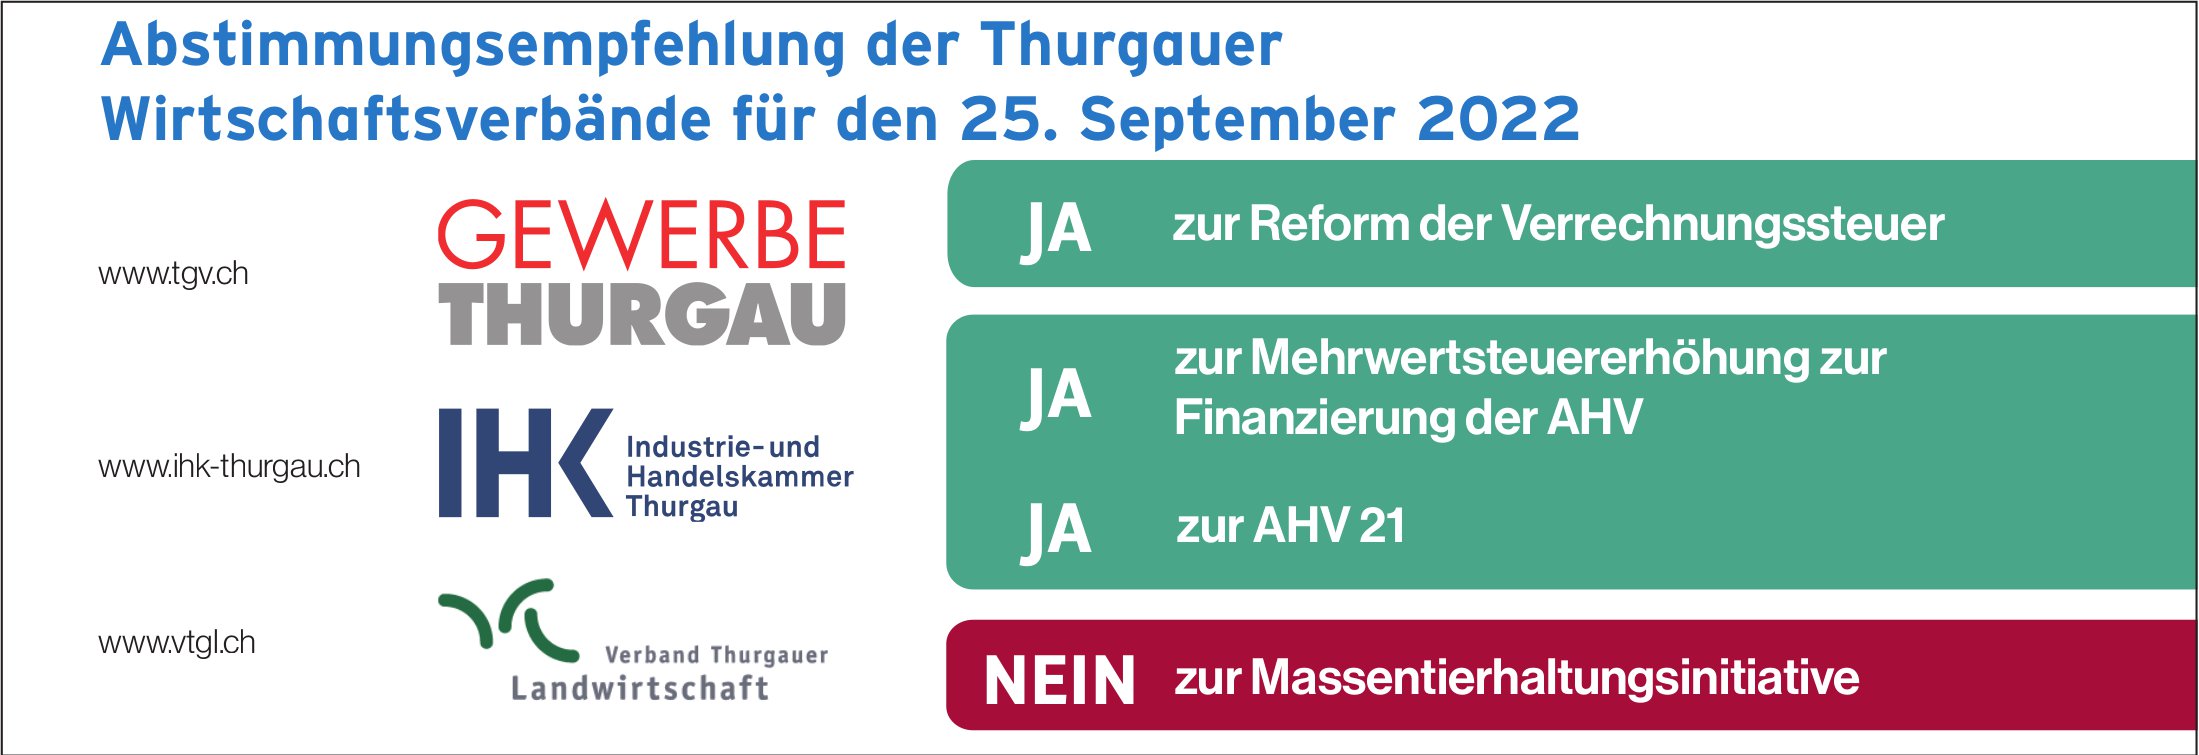 Abstimmungsempfehlung der Thurgauer Wirtschaftsverbände für den 25. September 2022